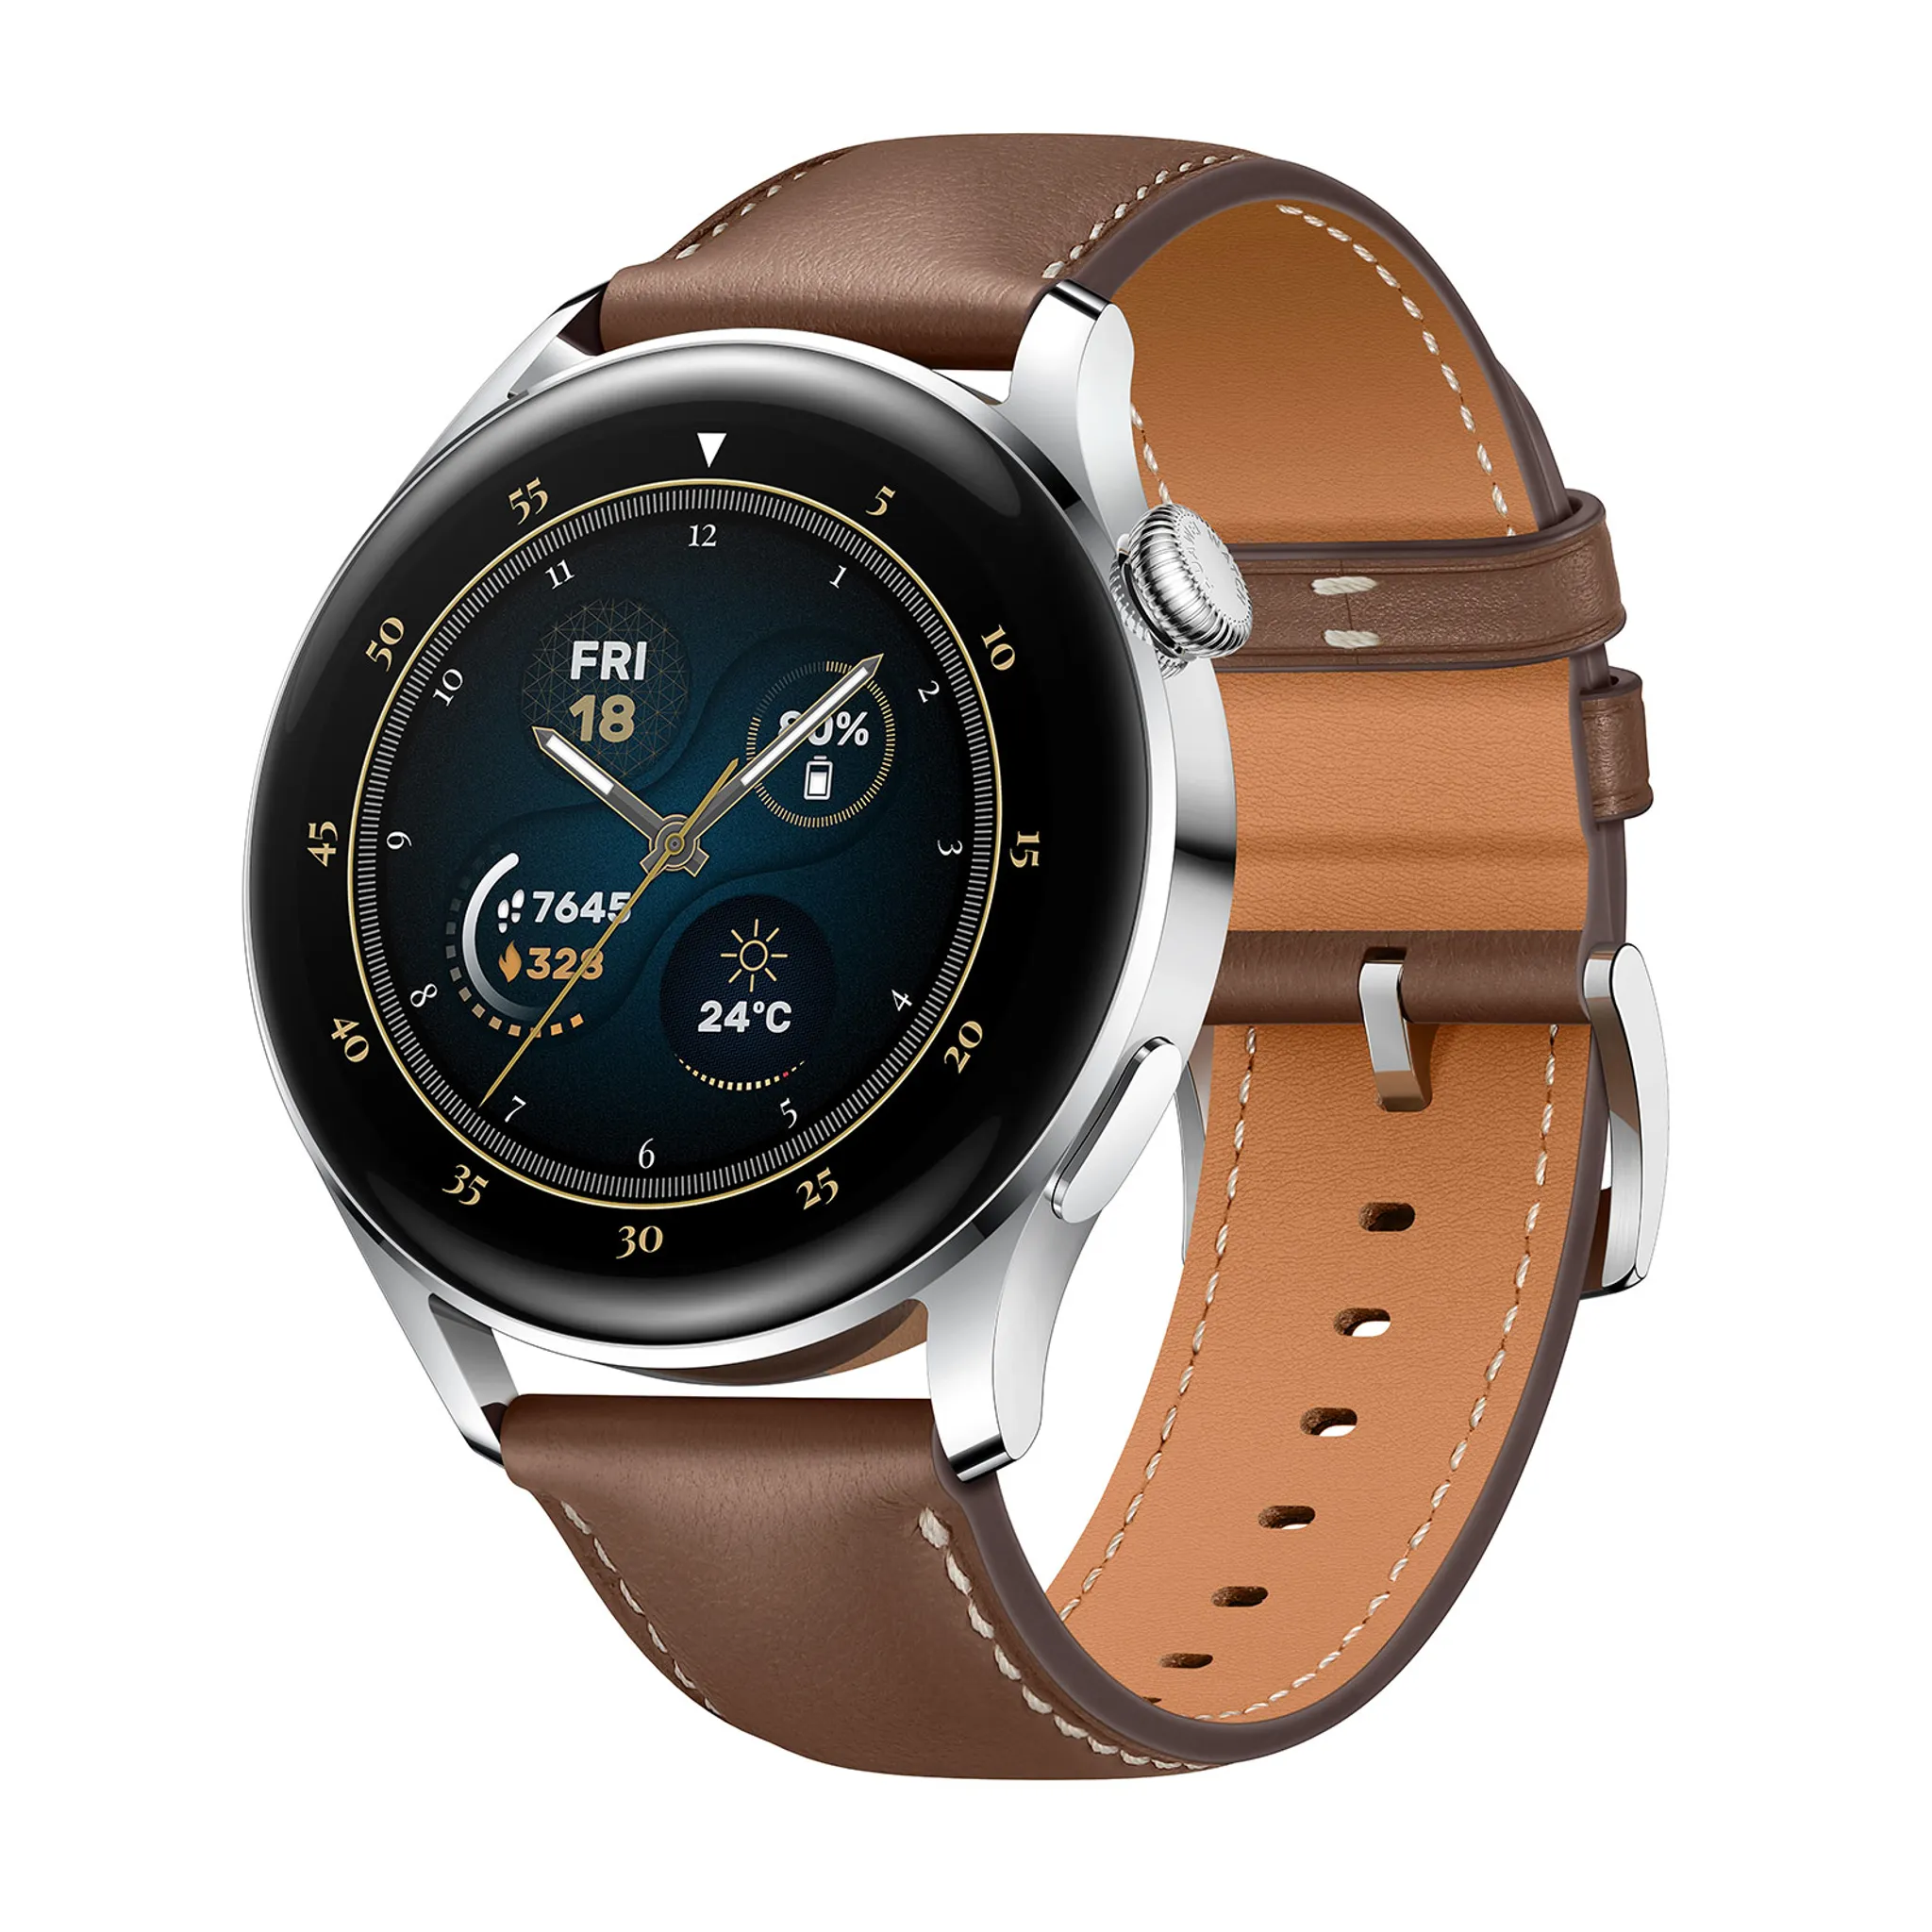 HUAWEI Smartwatche edelstahl/braun 3 Watch